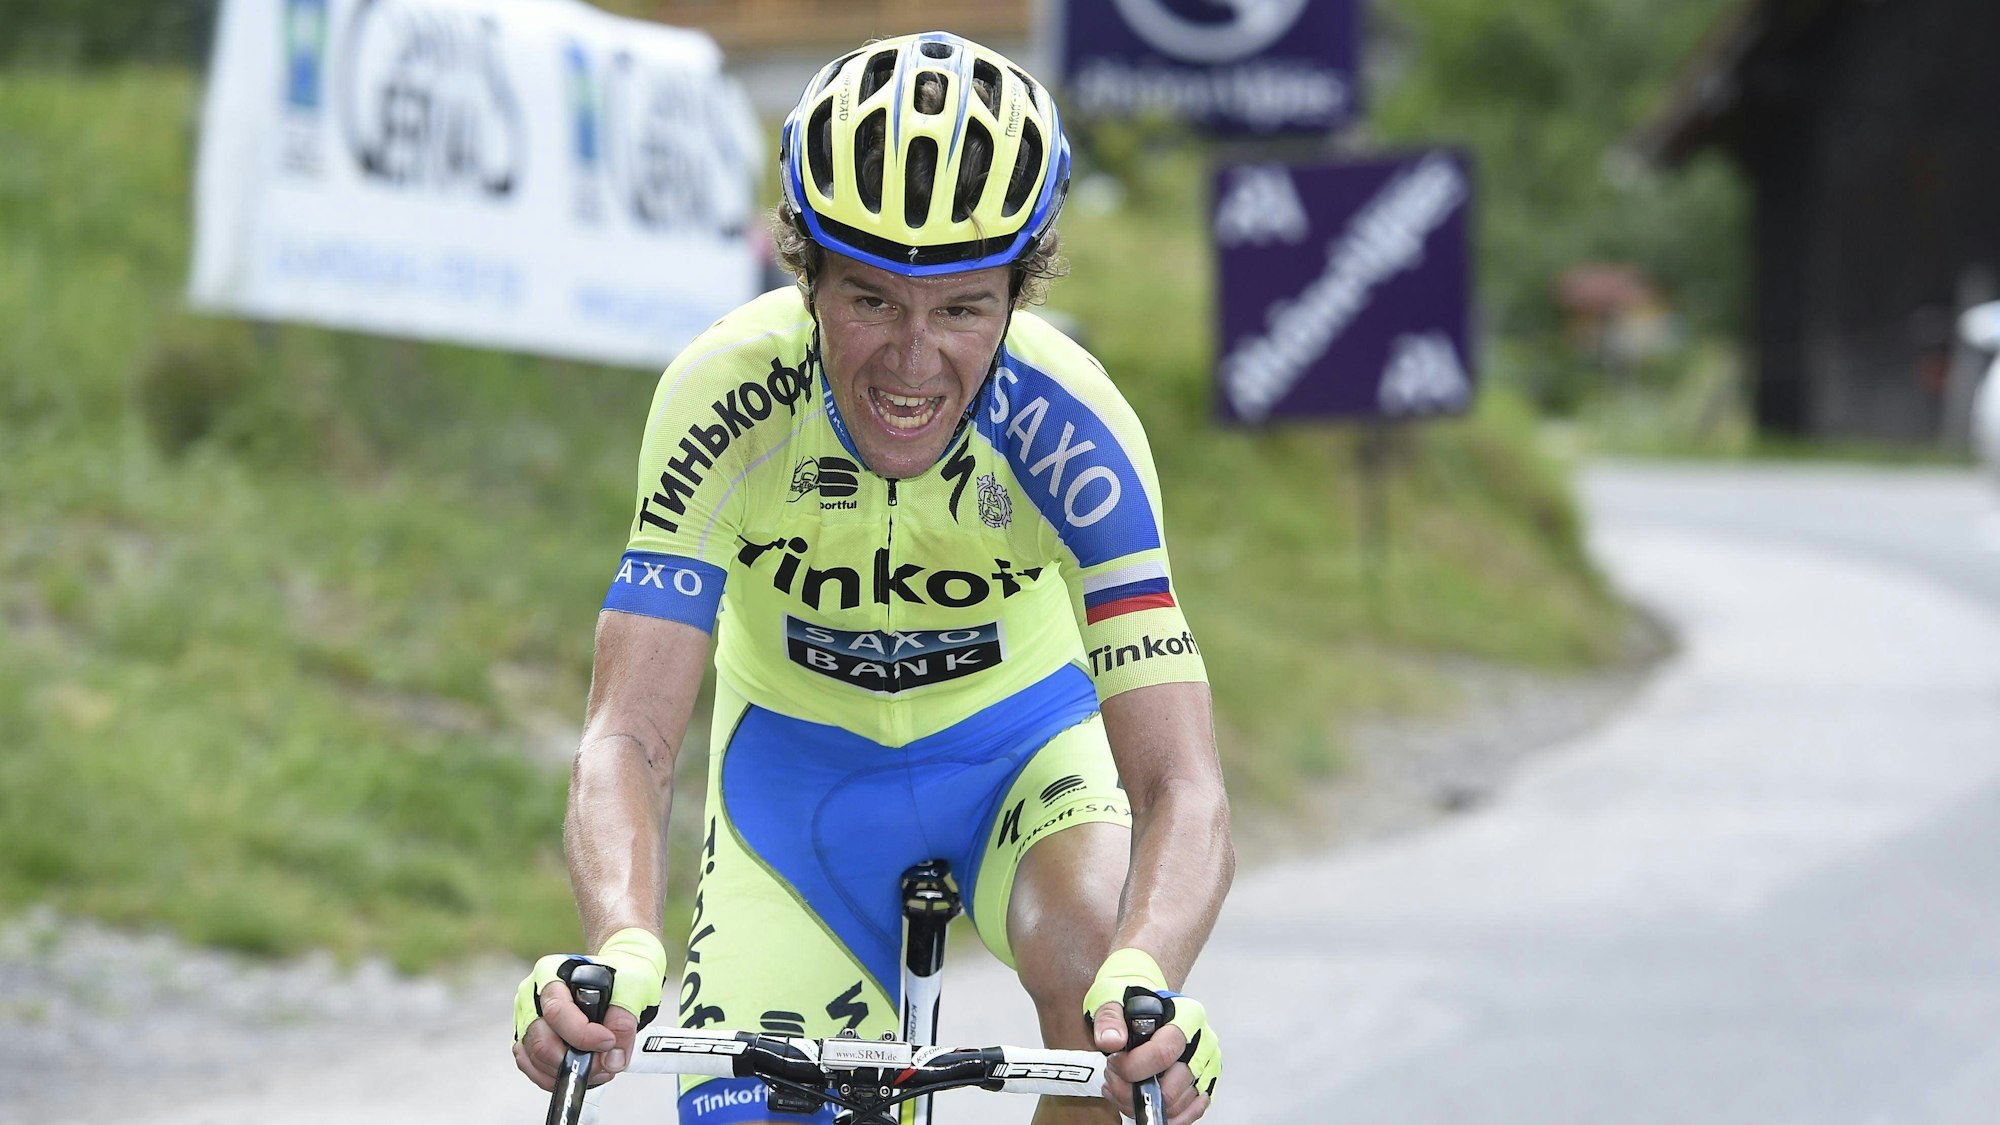 Chris Anker Sörensen angestrengt auf einem Rennrad